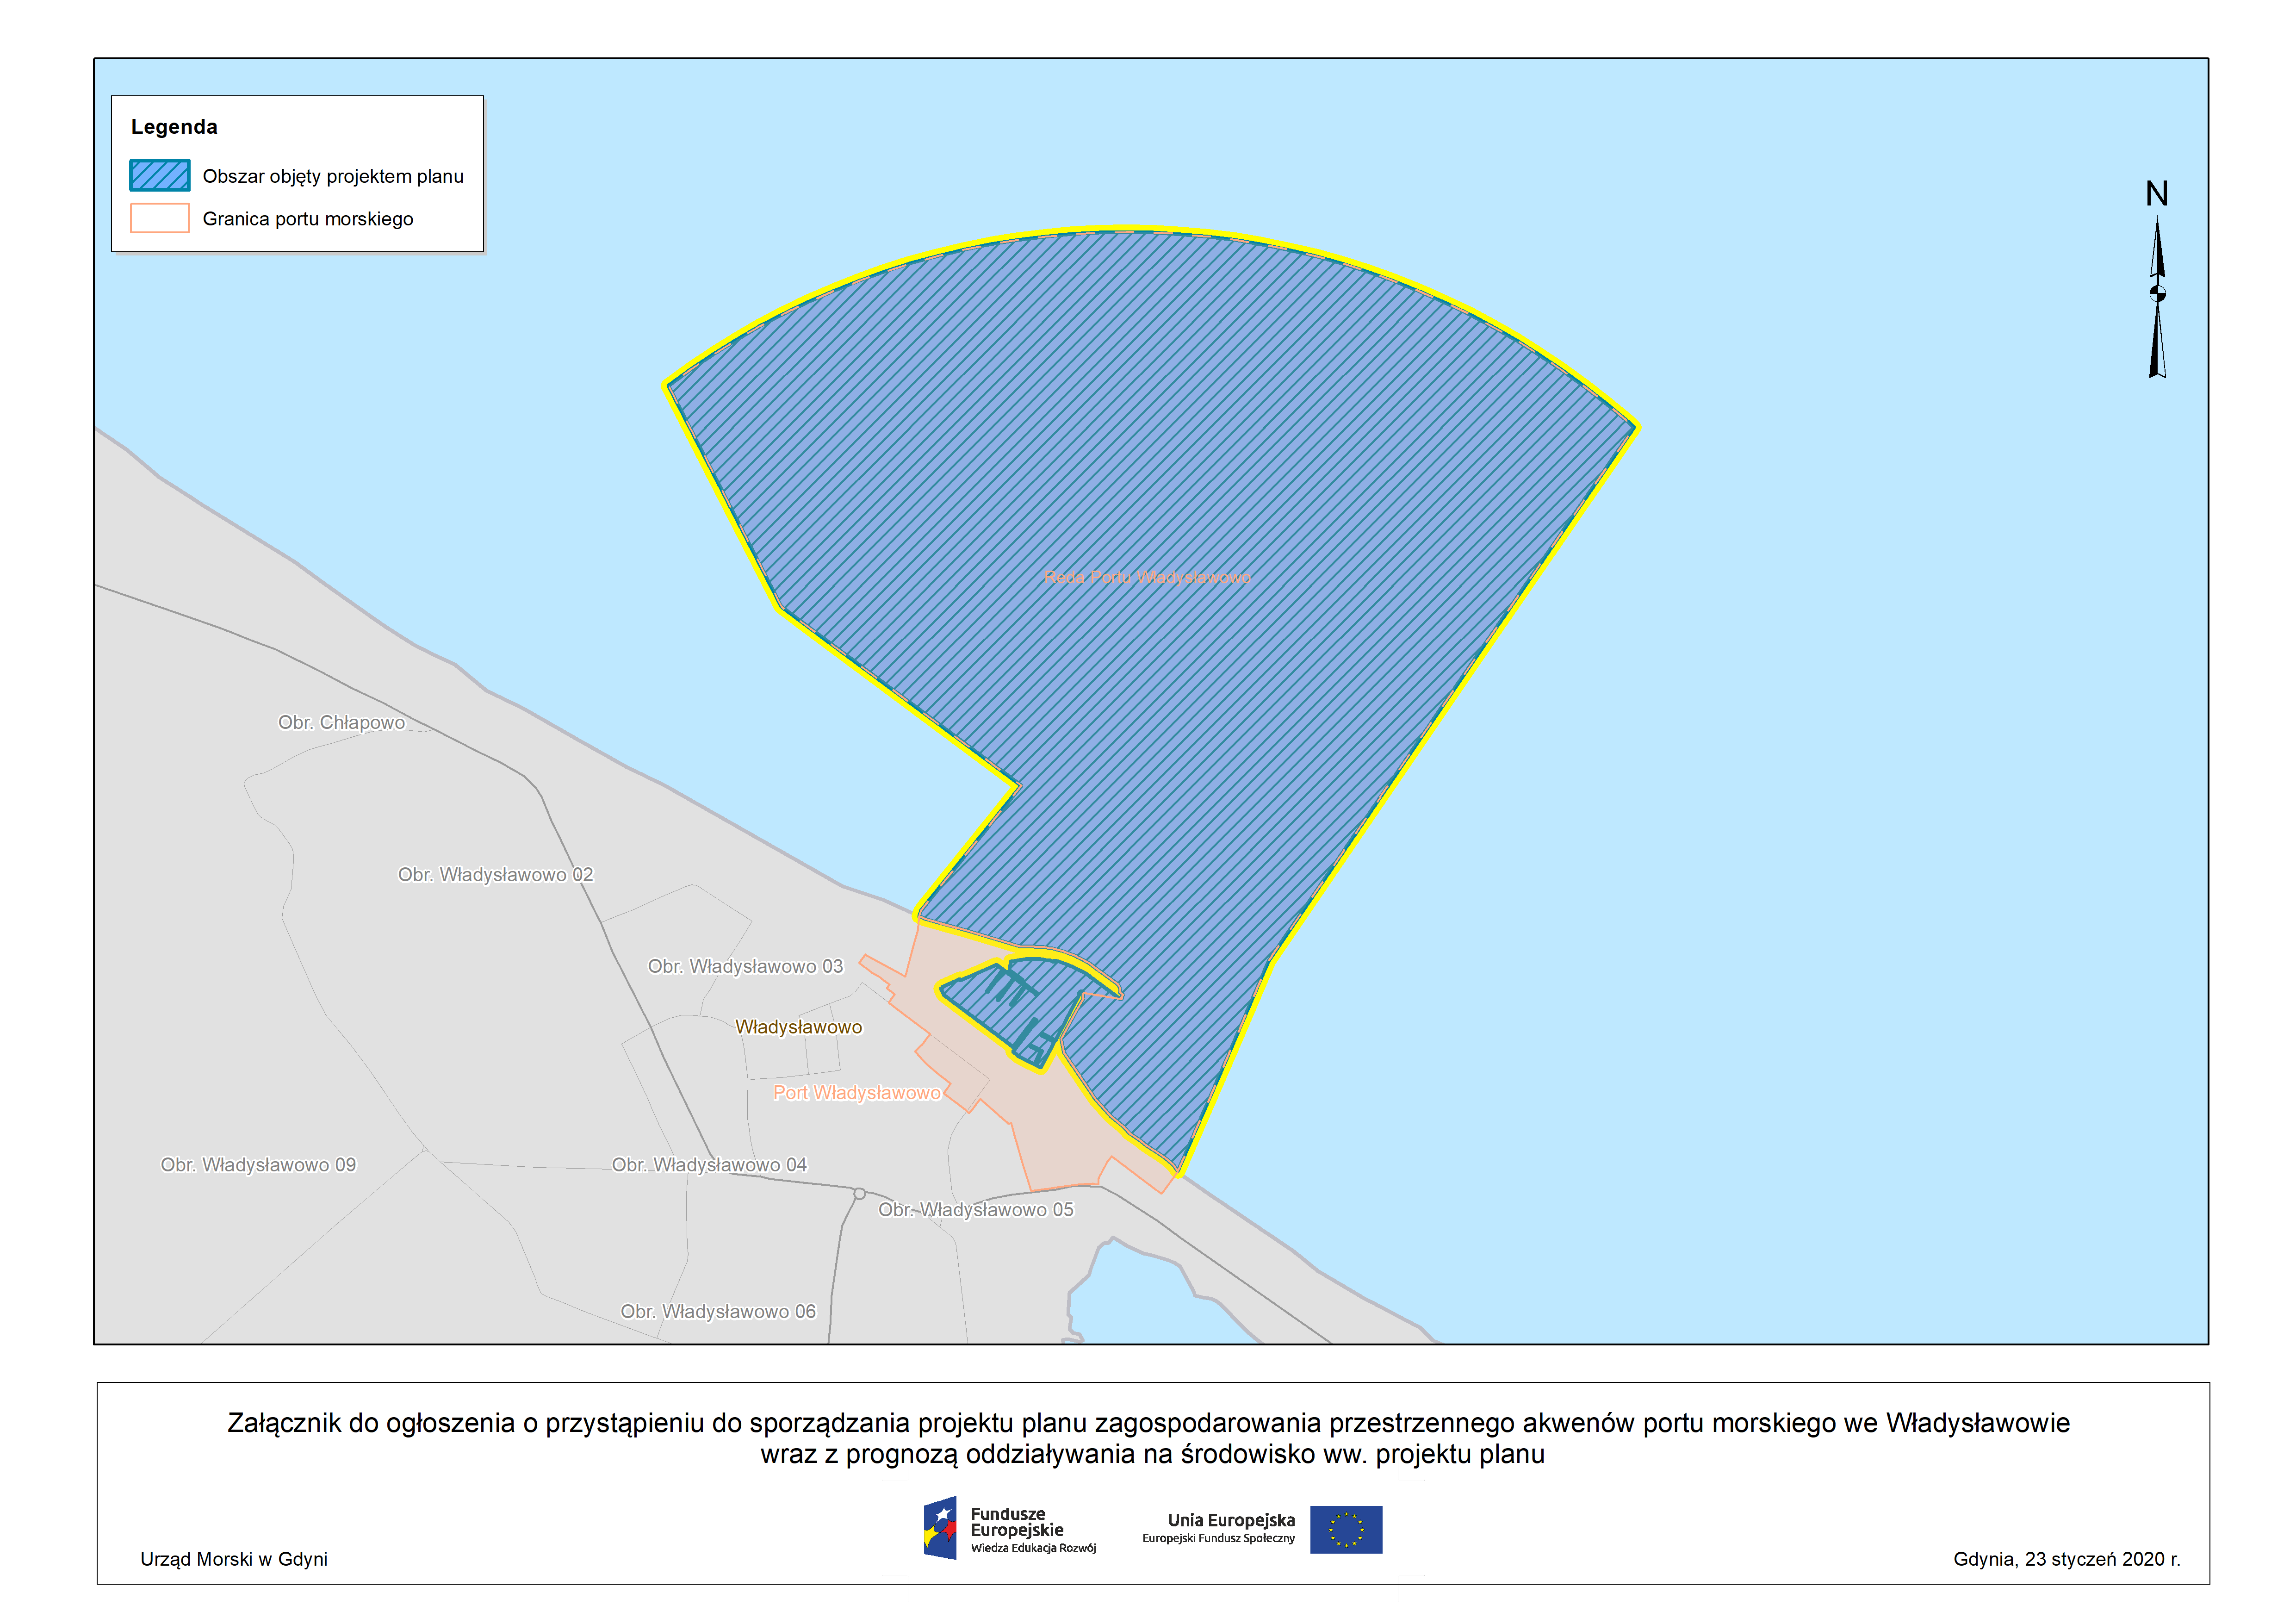 Ogłoszenie o przystąpieniu do sporządzania projektu planu zagospodarowania przestrzennego akwenów portu morskiego we Władysławowie